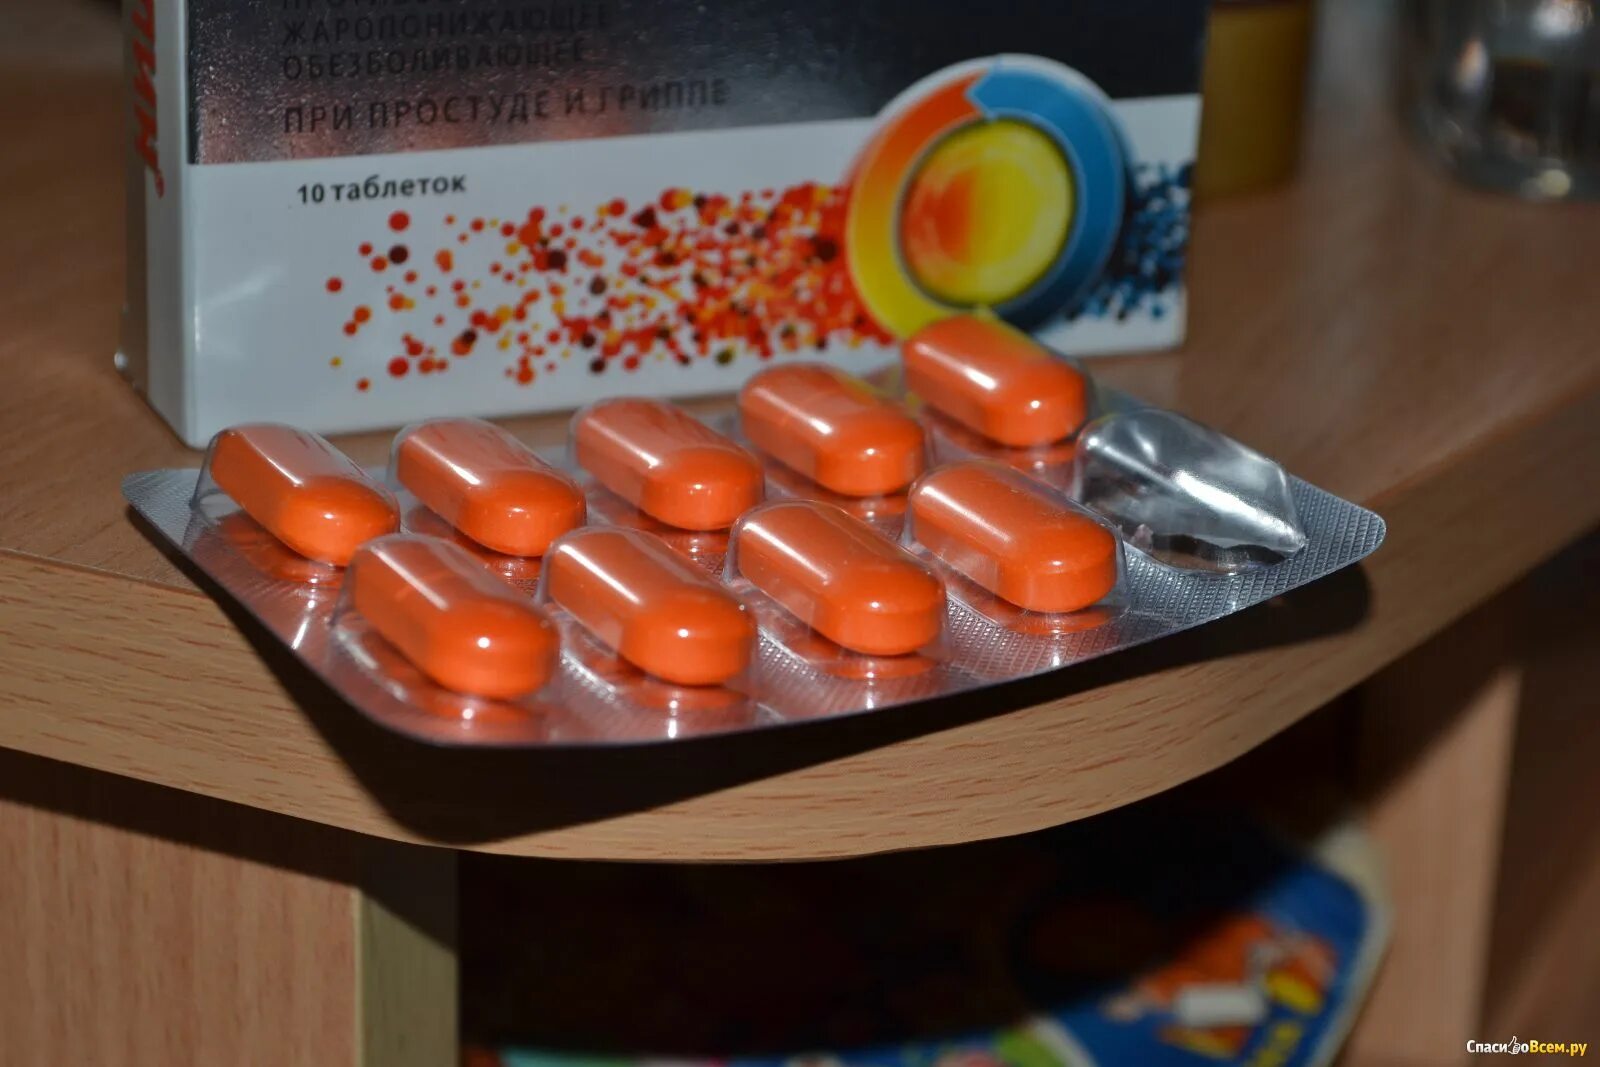 Ибуклин оранжевые капсулы. Ибупрофен оранжевые таблетки. Таблетки от головной боли. Оранжевая таблетка обезболивающее. Как часто можно обезболивающие таблетки